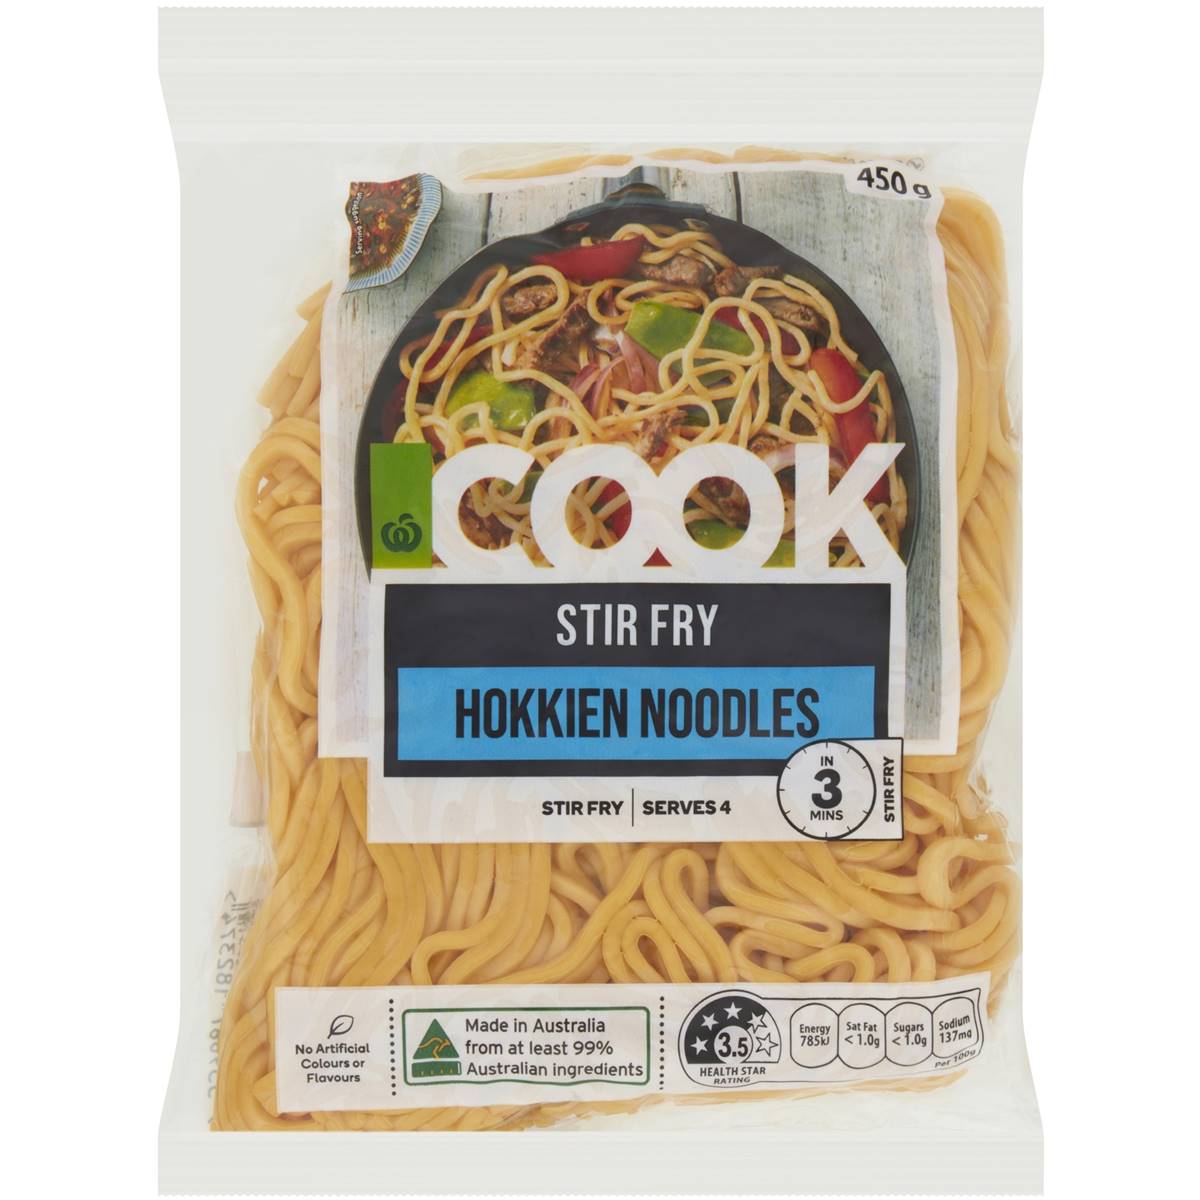 Calories in Woolworths Cook Stir Fry Hokkien Noodles